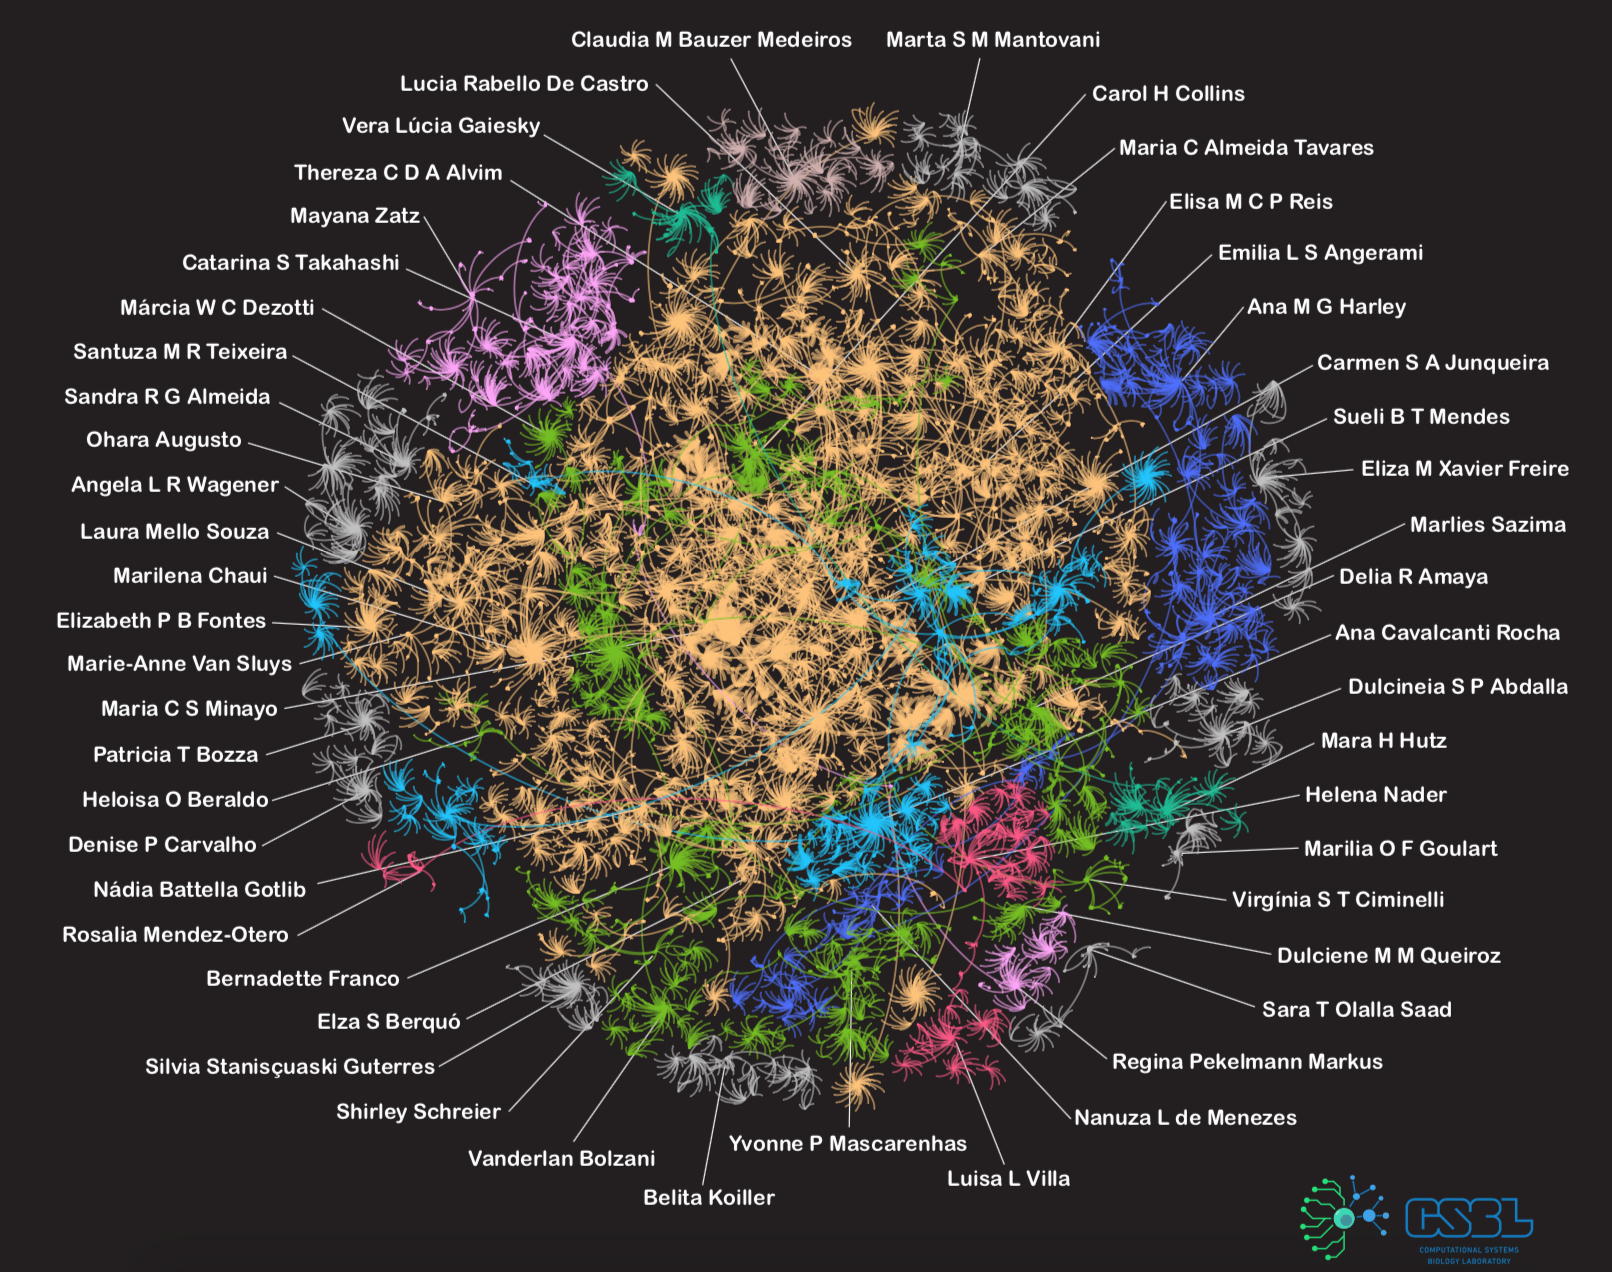 Rede mostra as descendências acadêmicas de 50 pesquisadoras brasileiras